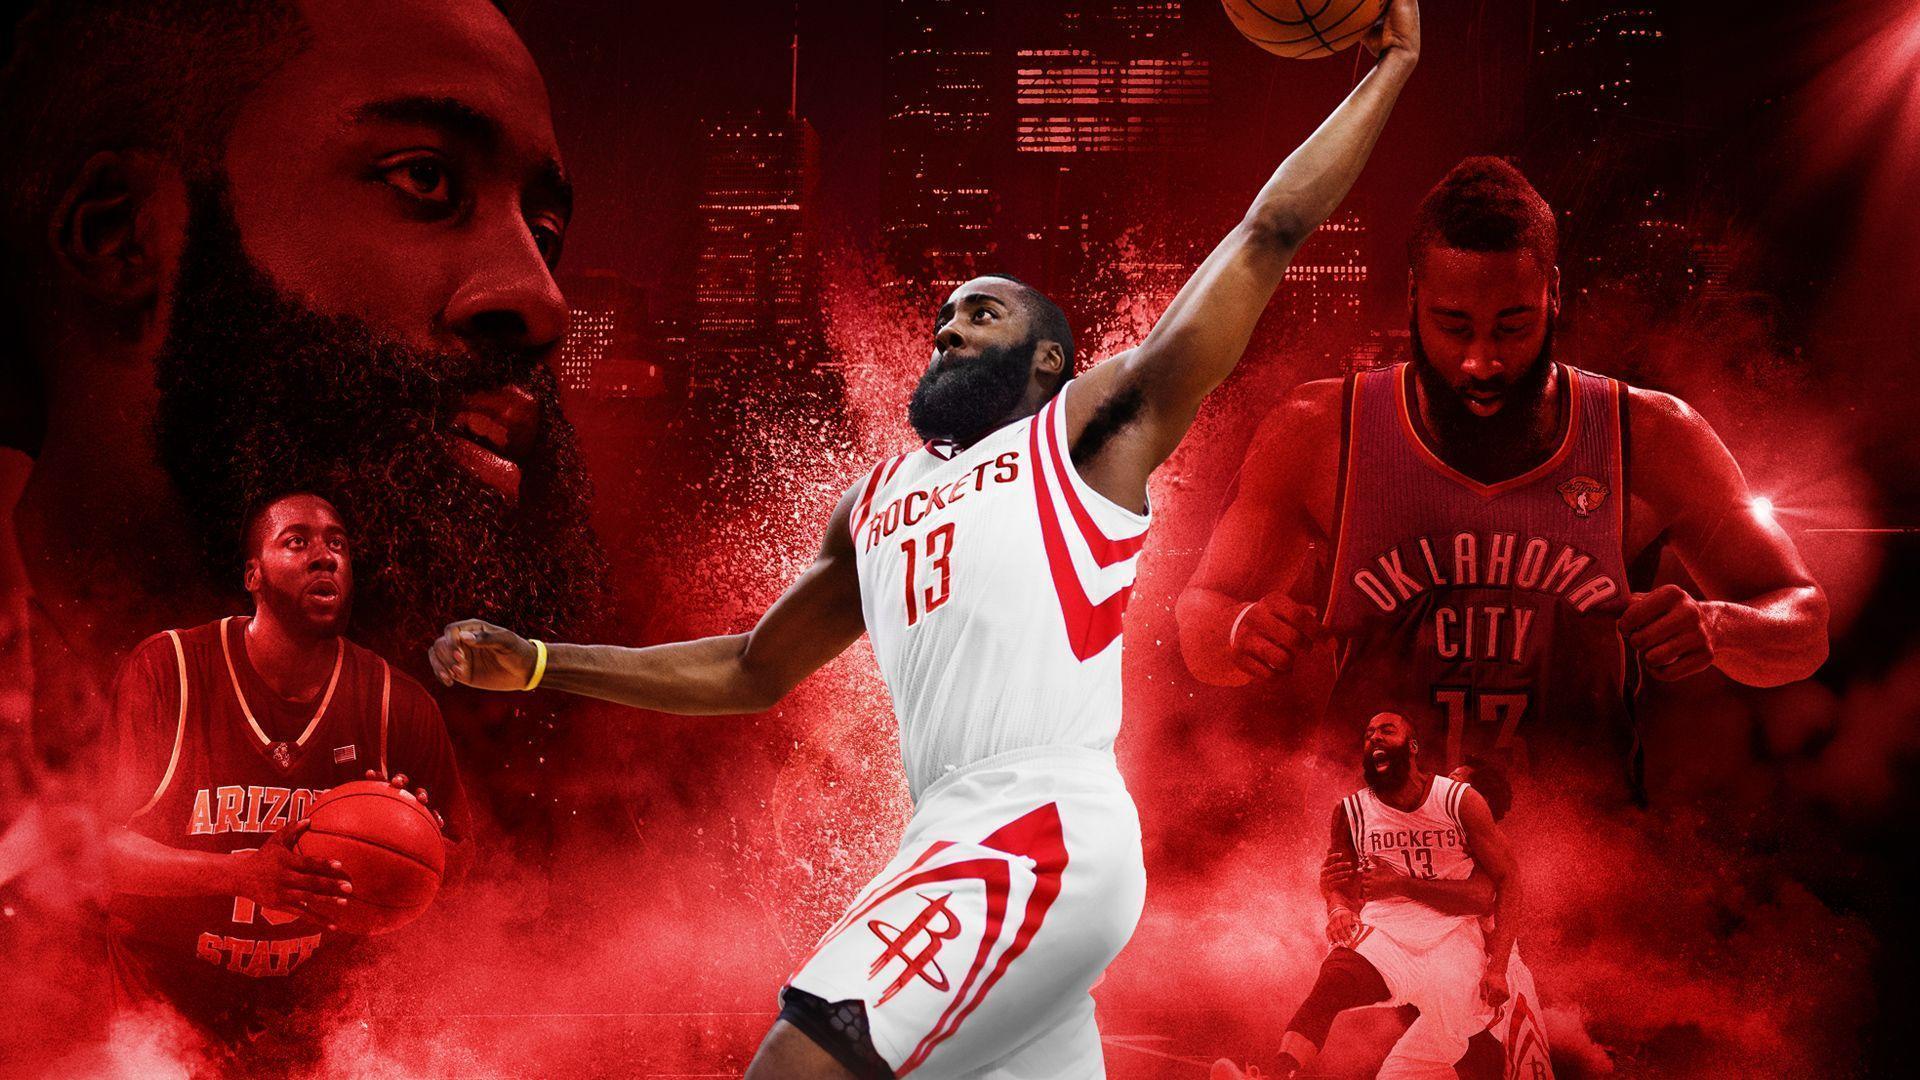 NBA 2K16 HD wallpaper free download